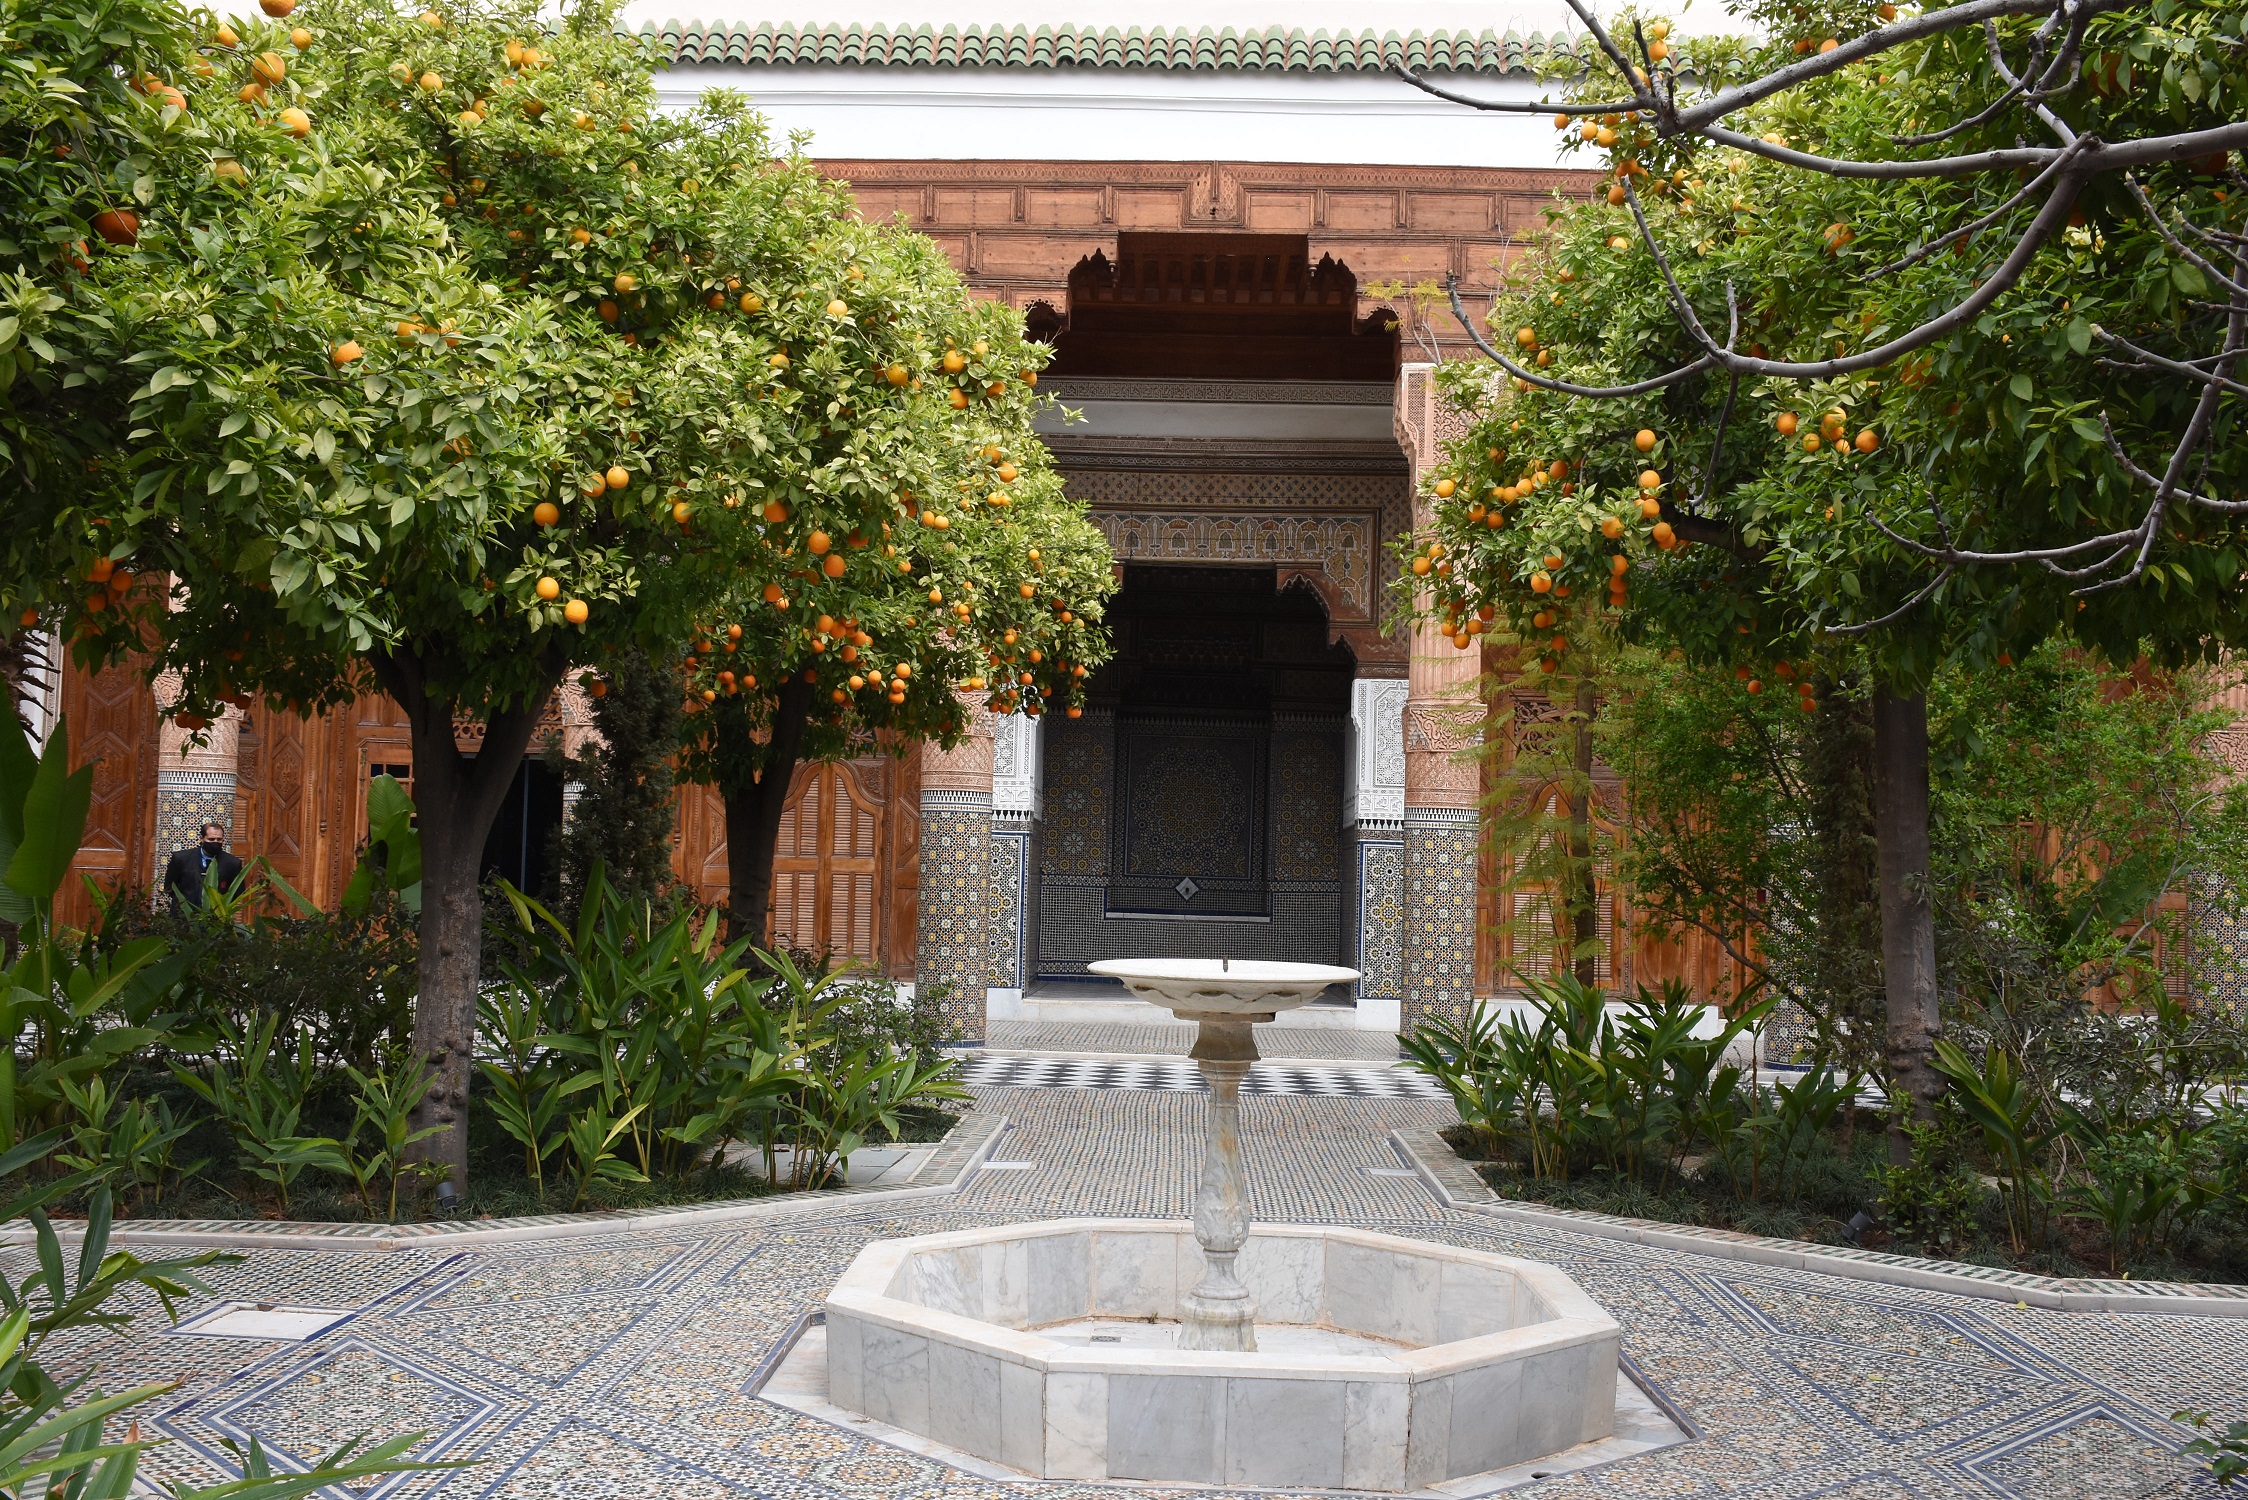 Regards sur le patrimoine marocain au Musée des Confluences-Dar El Bacha à Marrakech 